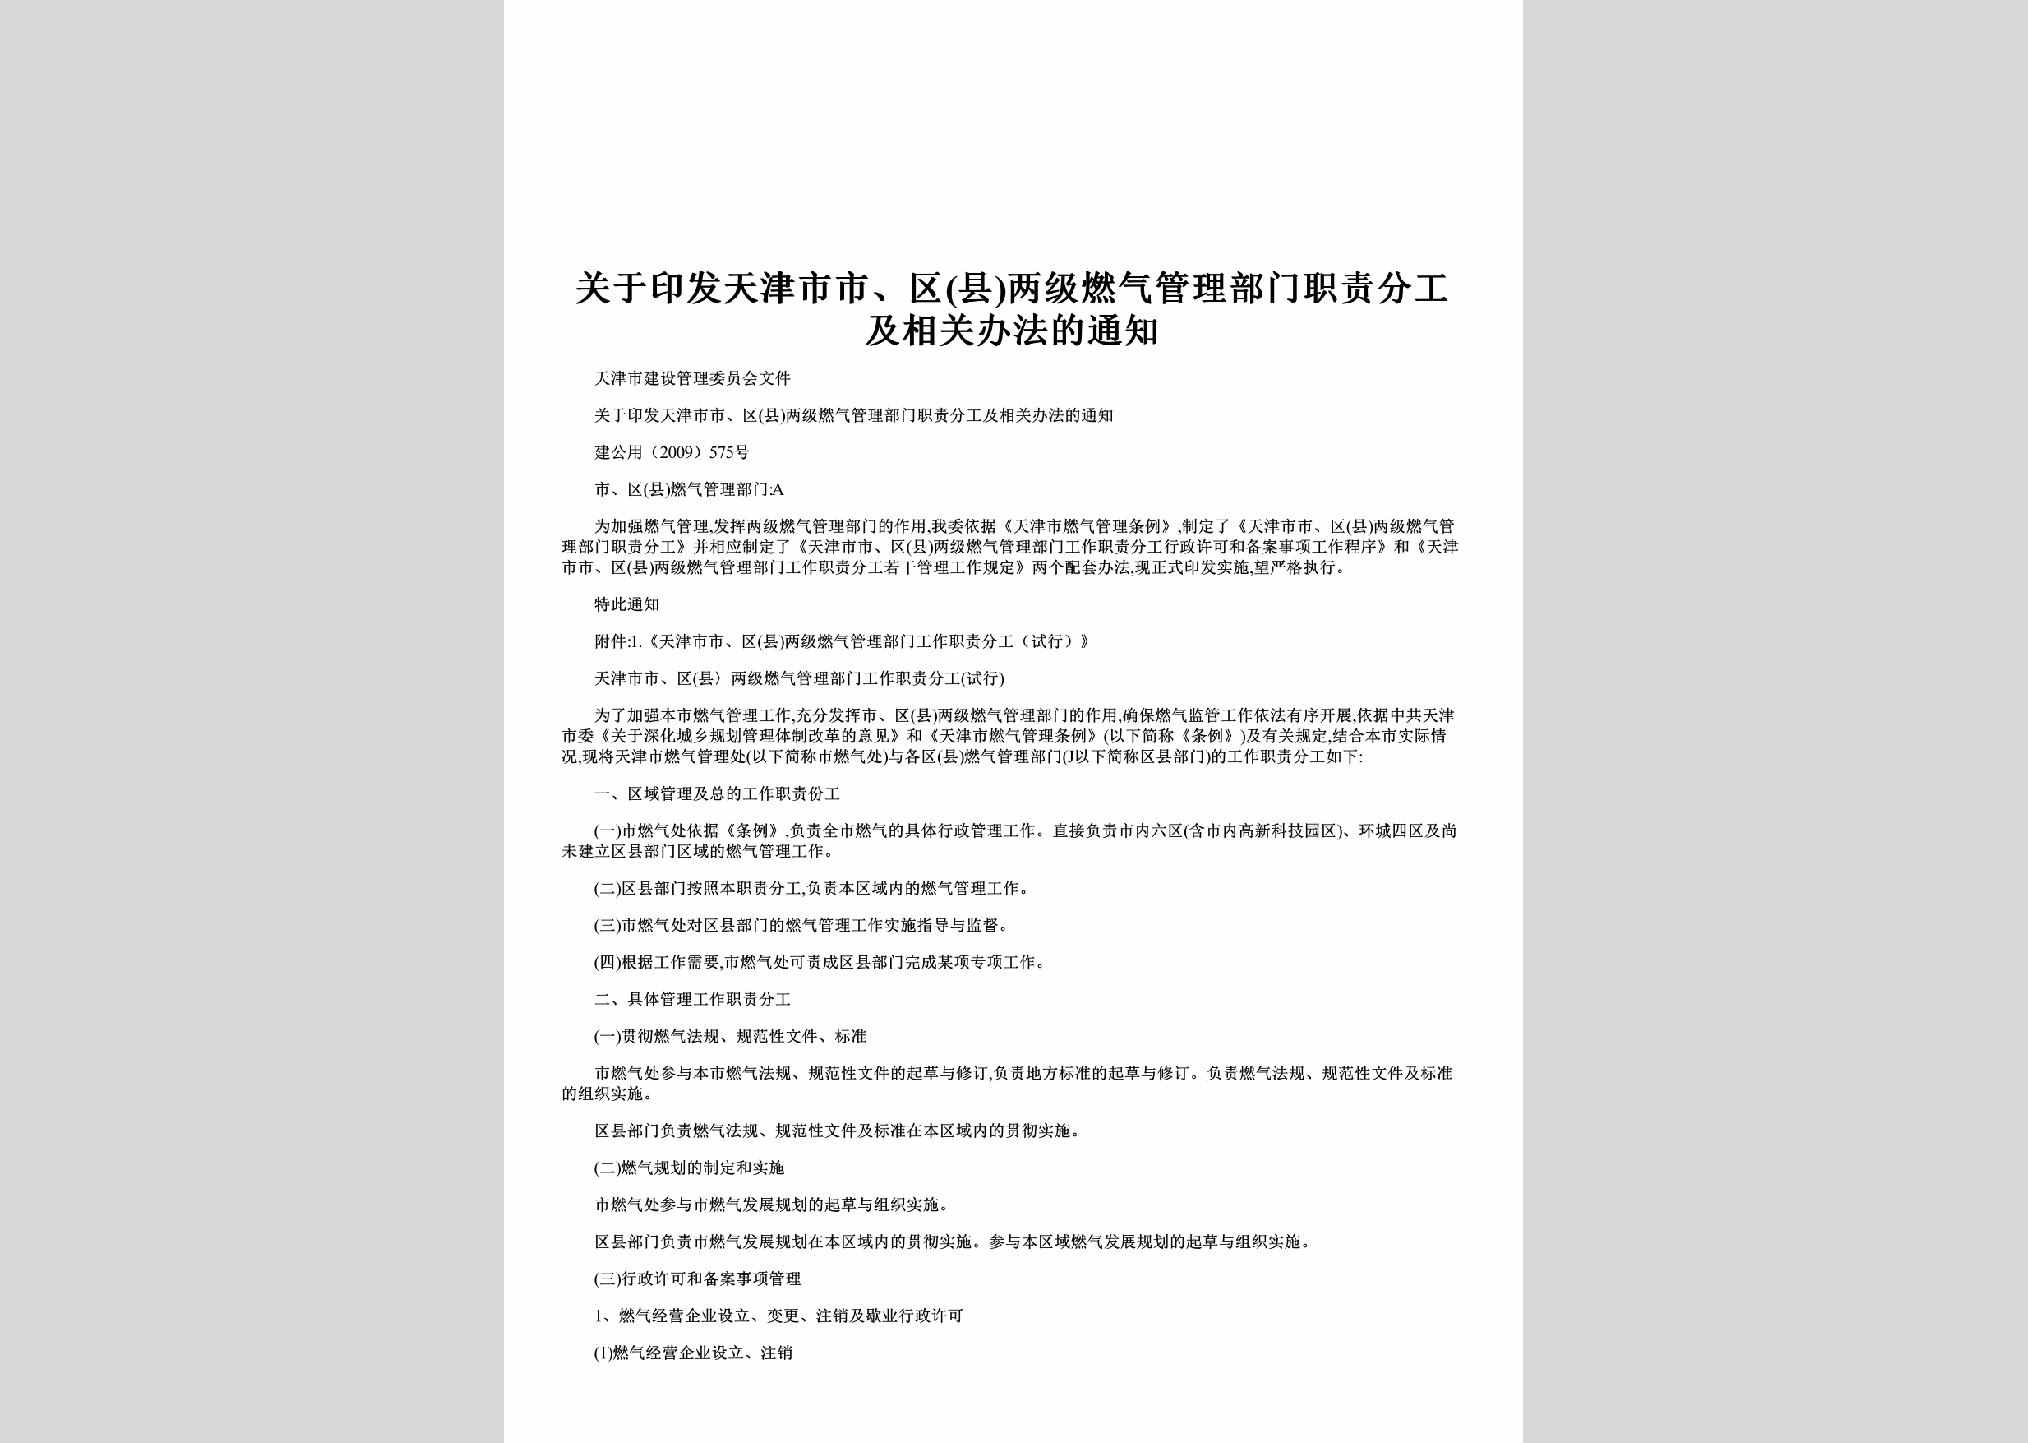 建公用（2009）575号：关于印发天津市市、区(县)两级燃气管理部门职责分工及相关办法的通知